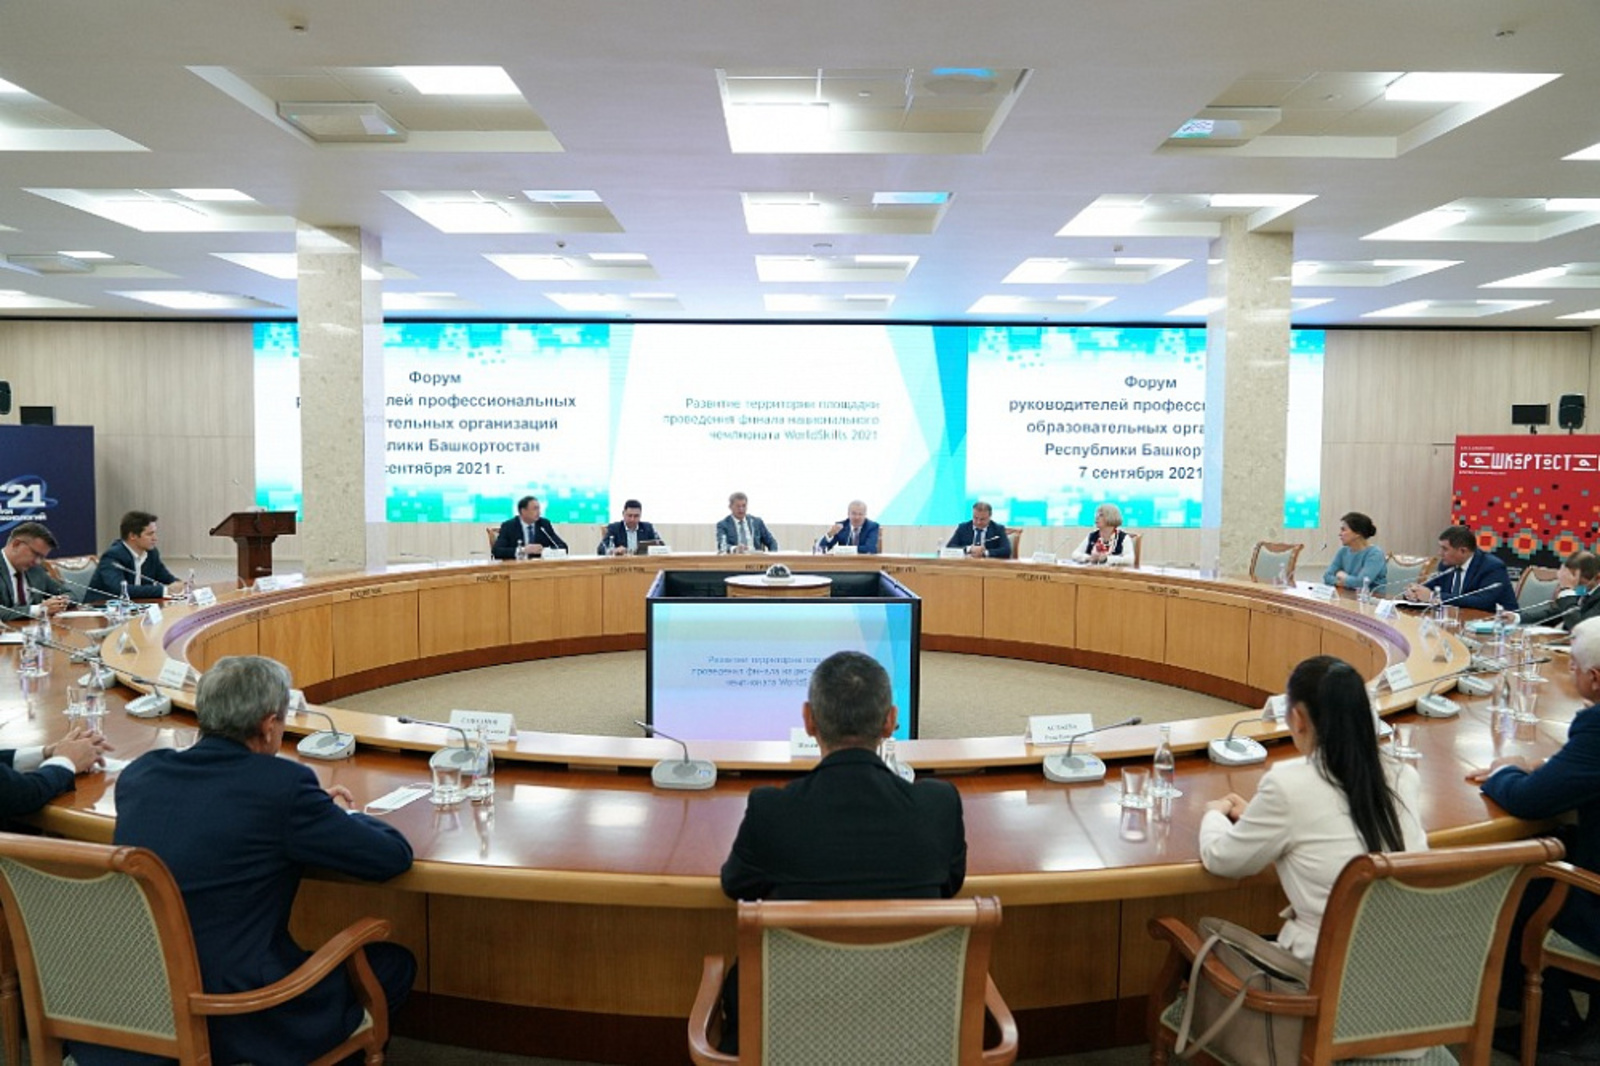 Встреча с руководителями профессиональных образовательных организаций Башкортостана